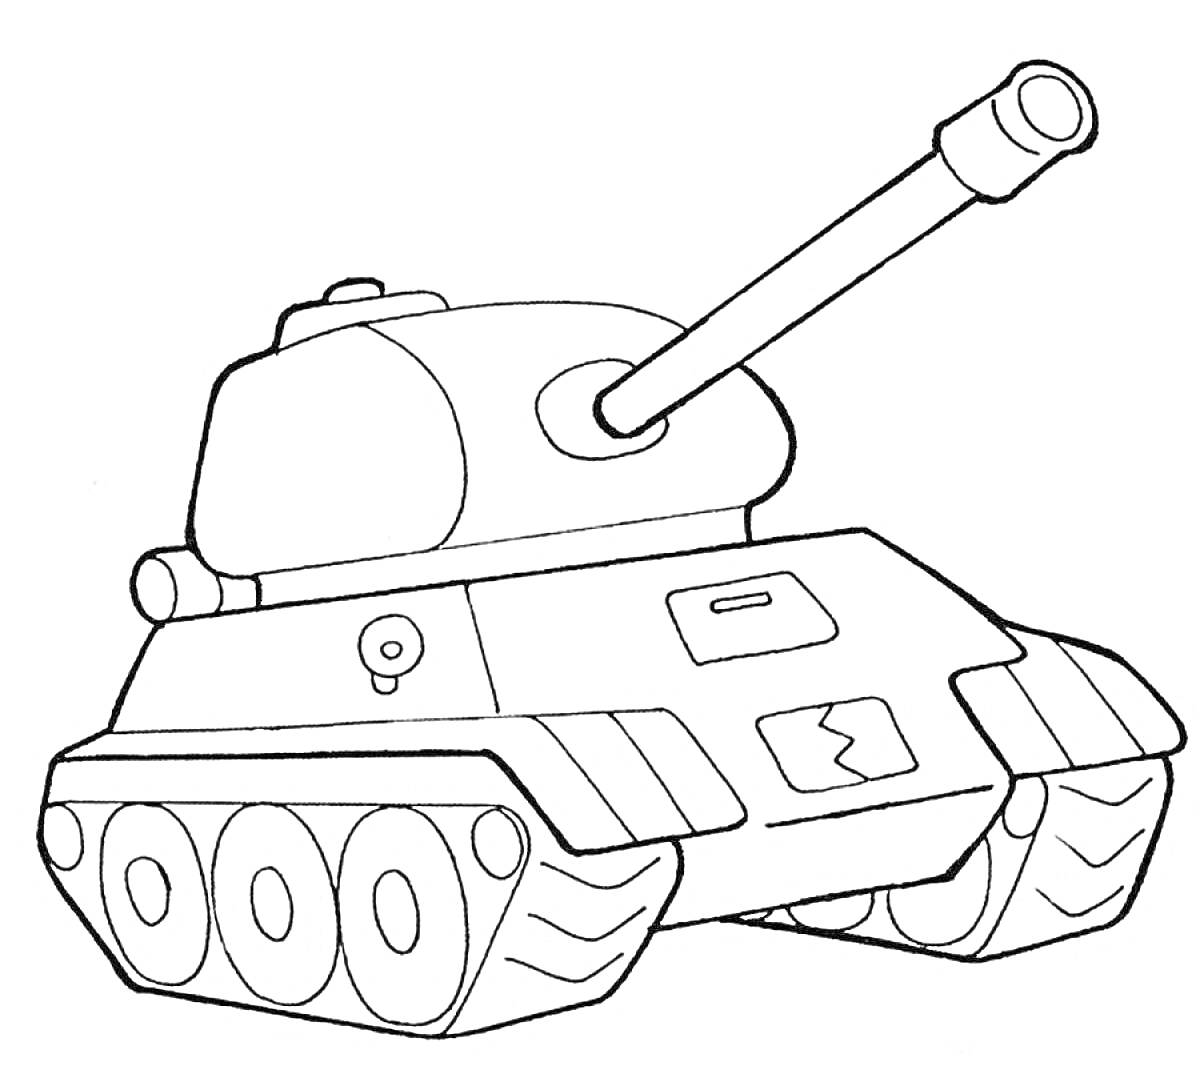 Раскраска Танковый бой: танк с пушкой, кормовая часть танка, передние и задние гусеницы